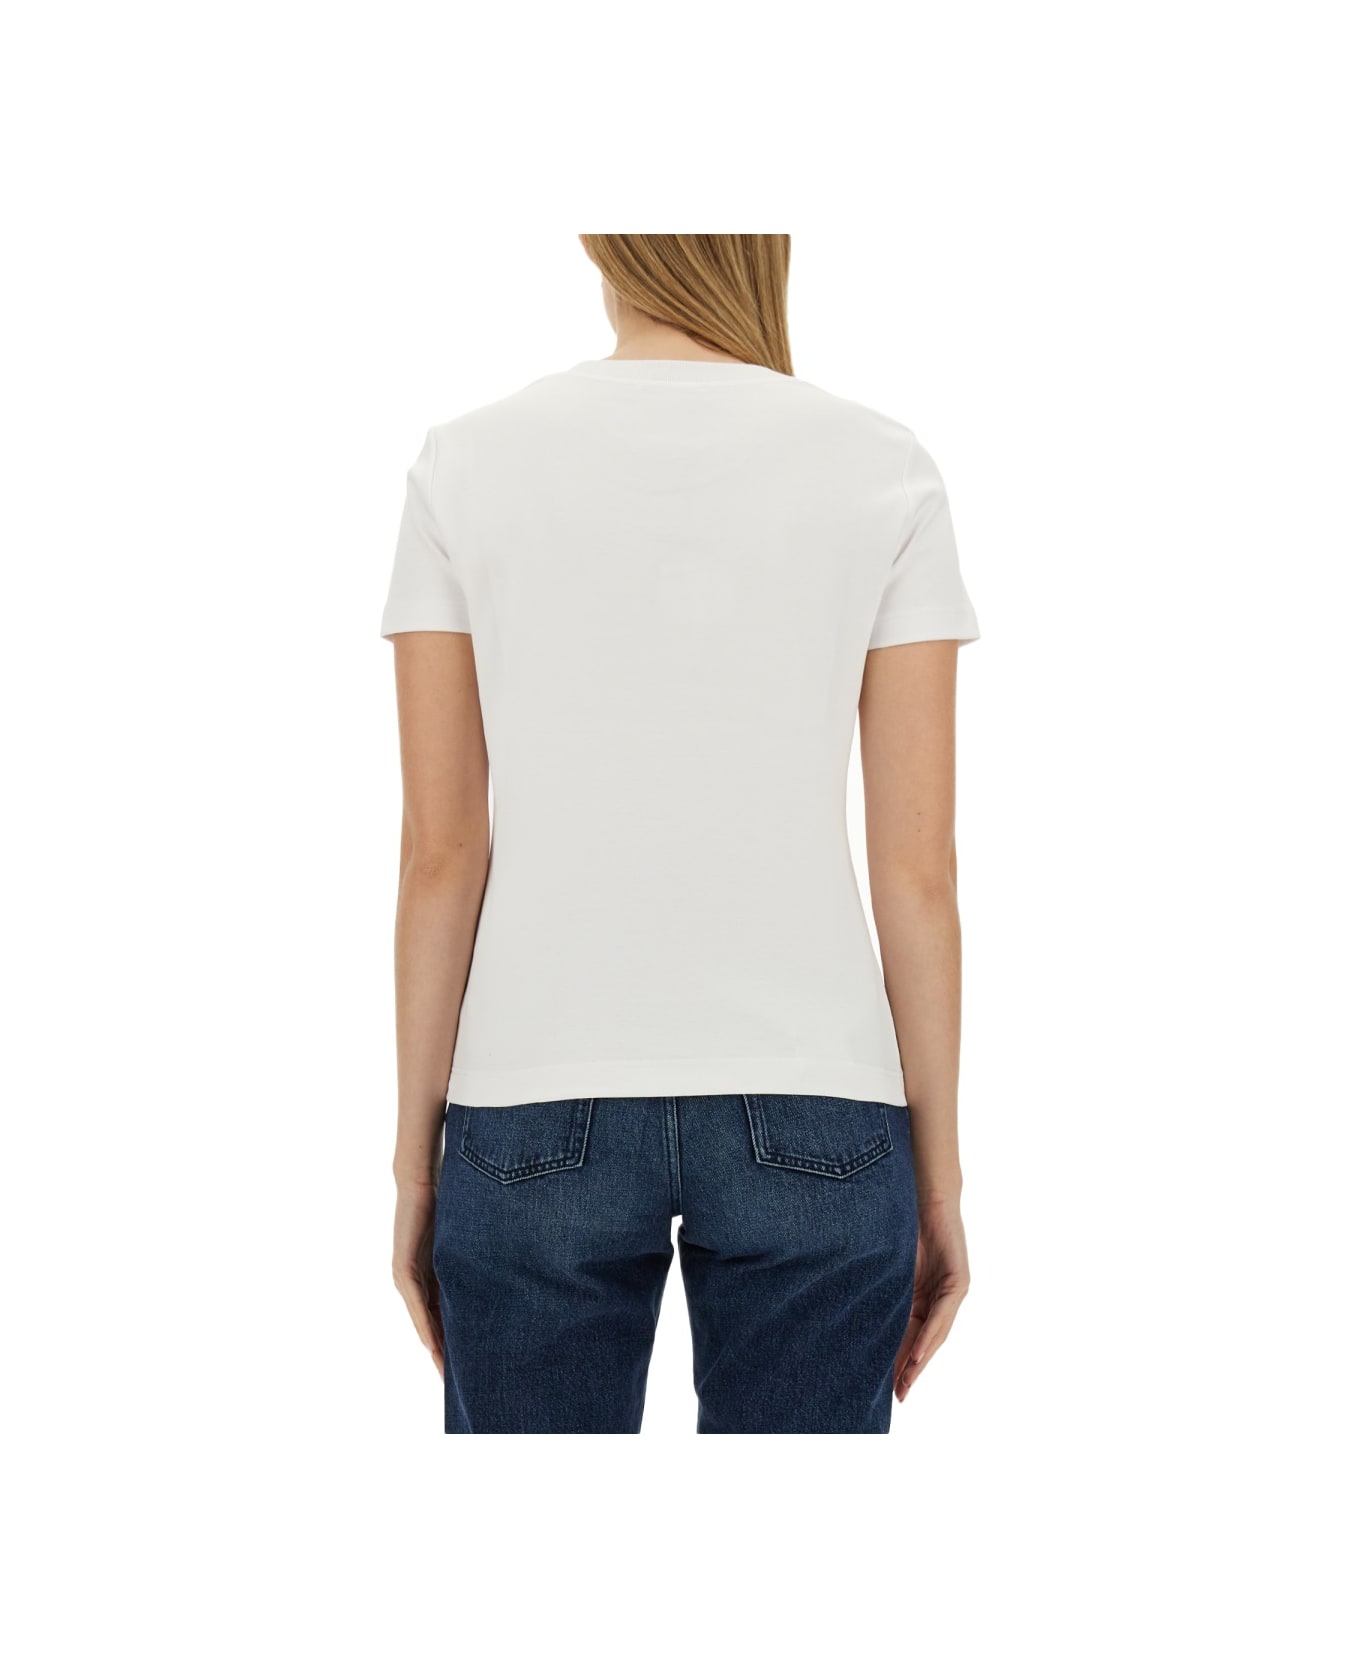 Dolce & Gabbana T-shirt With Logo - WHITE